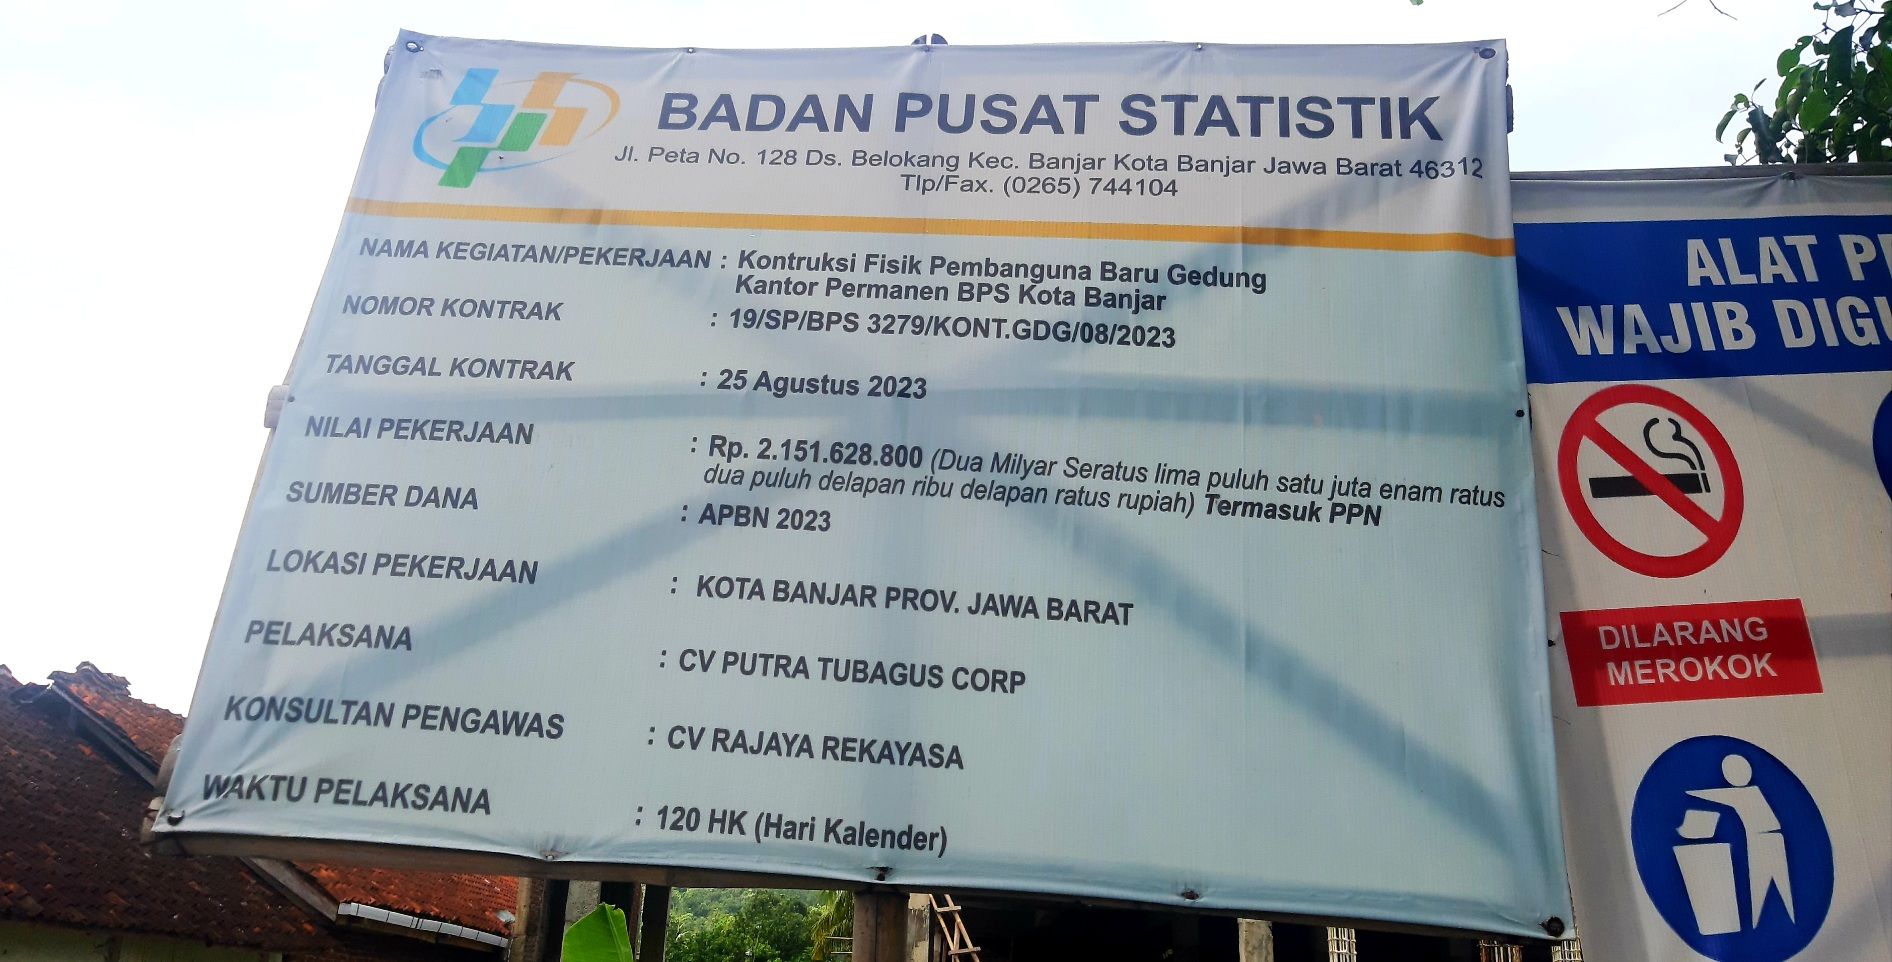 Waktu pelaksanaan kerja selama 120 hari. Ini tercantum dalam papan proyek pembangunan baru BPS Kota Banjar.